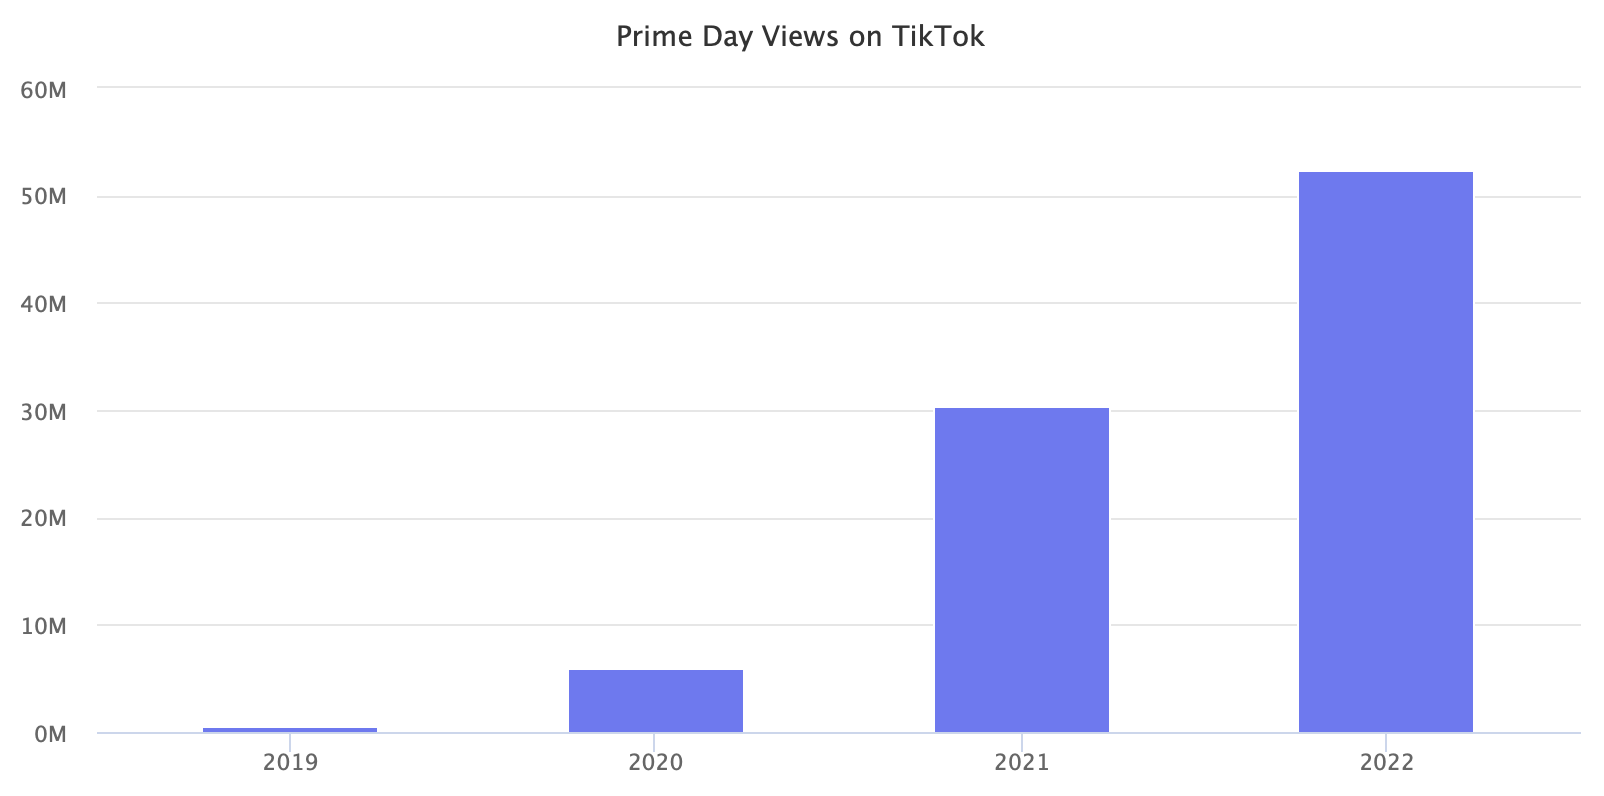 Prime Day views on TikTok